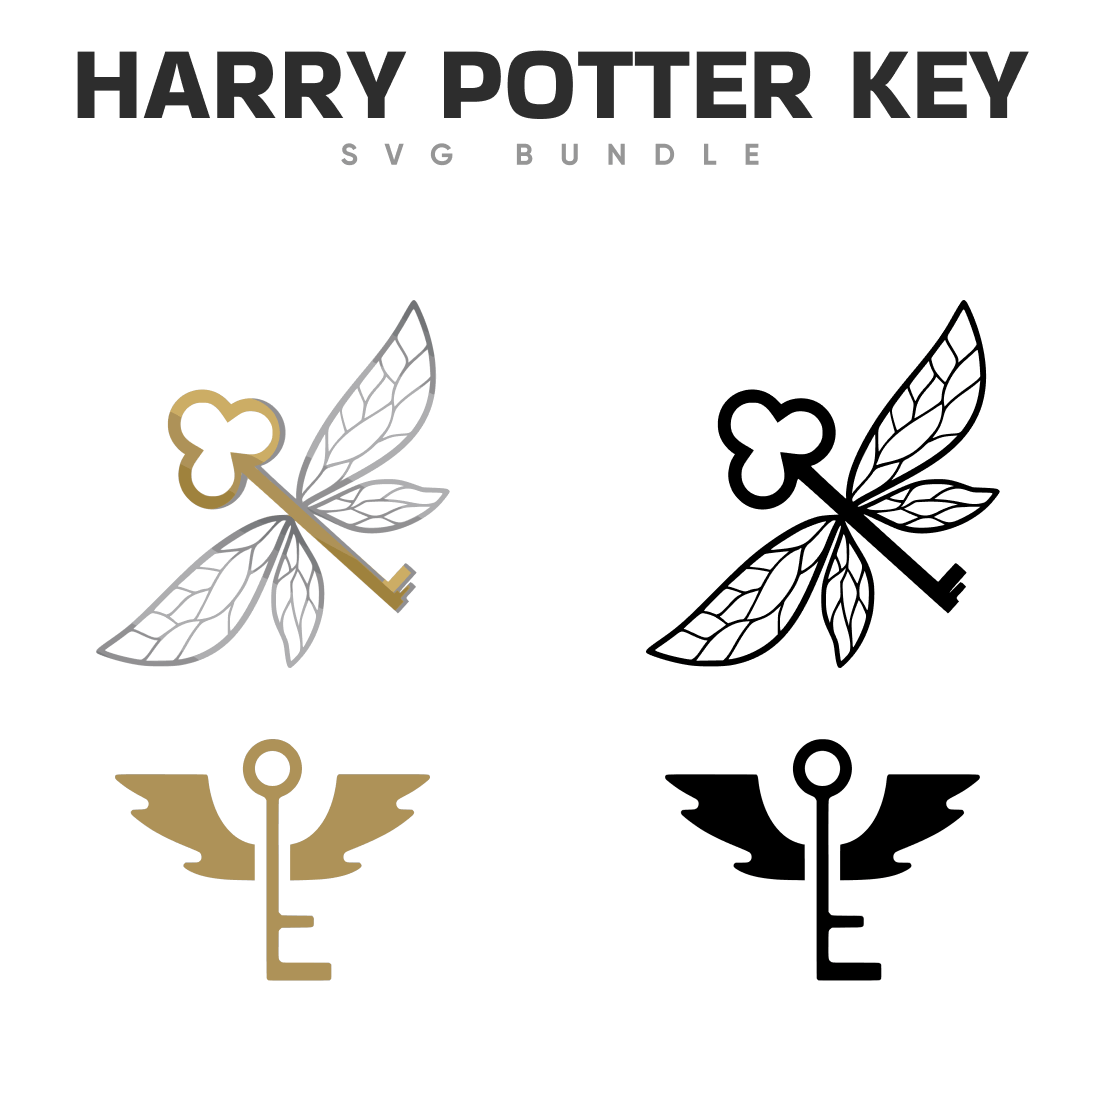 Harry Potter Flying Key SVG